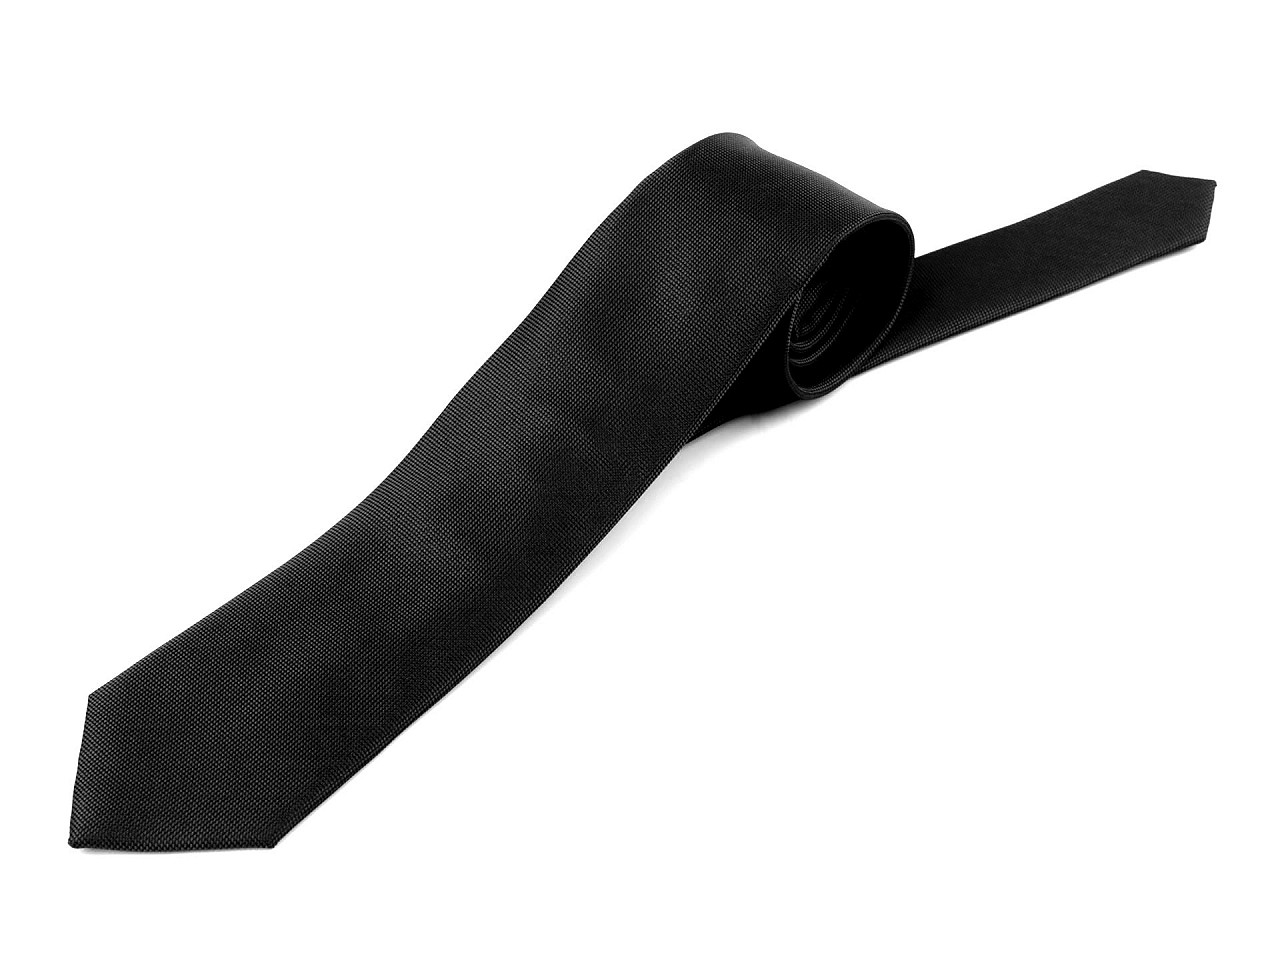 Mikrofaser-Krawatte, einfarbig, schwarz, 1 Stück